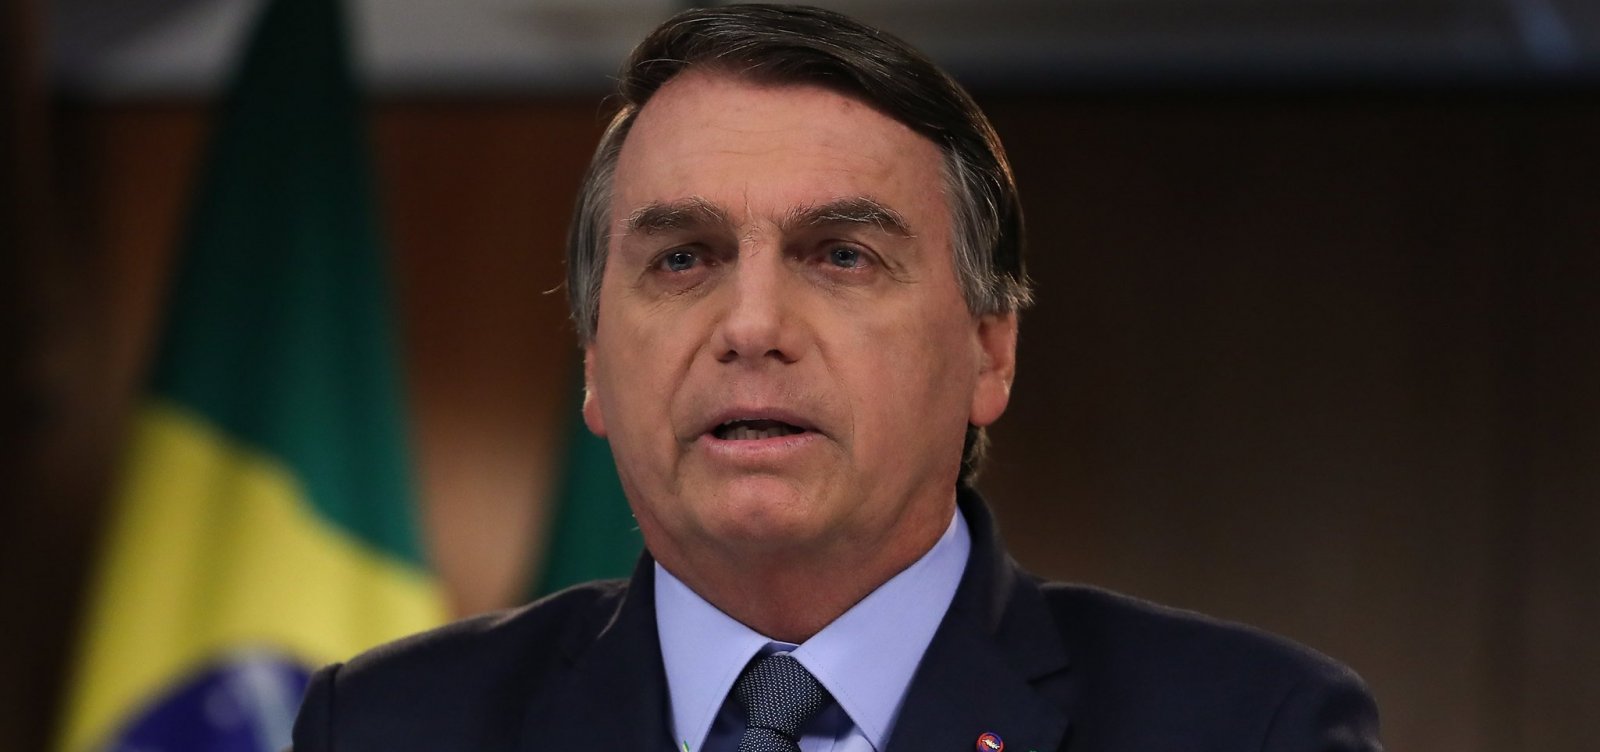 'Somos vítimas de campanha de desinformação sobre Pantanal e Amazônia', diz Bolsonaro na ONU